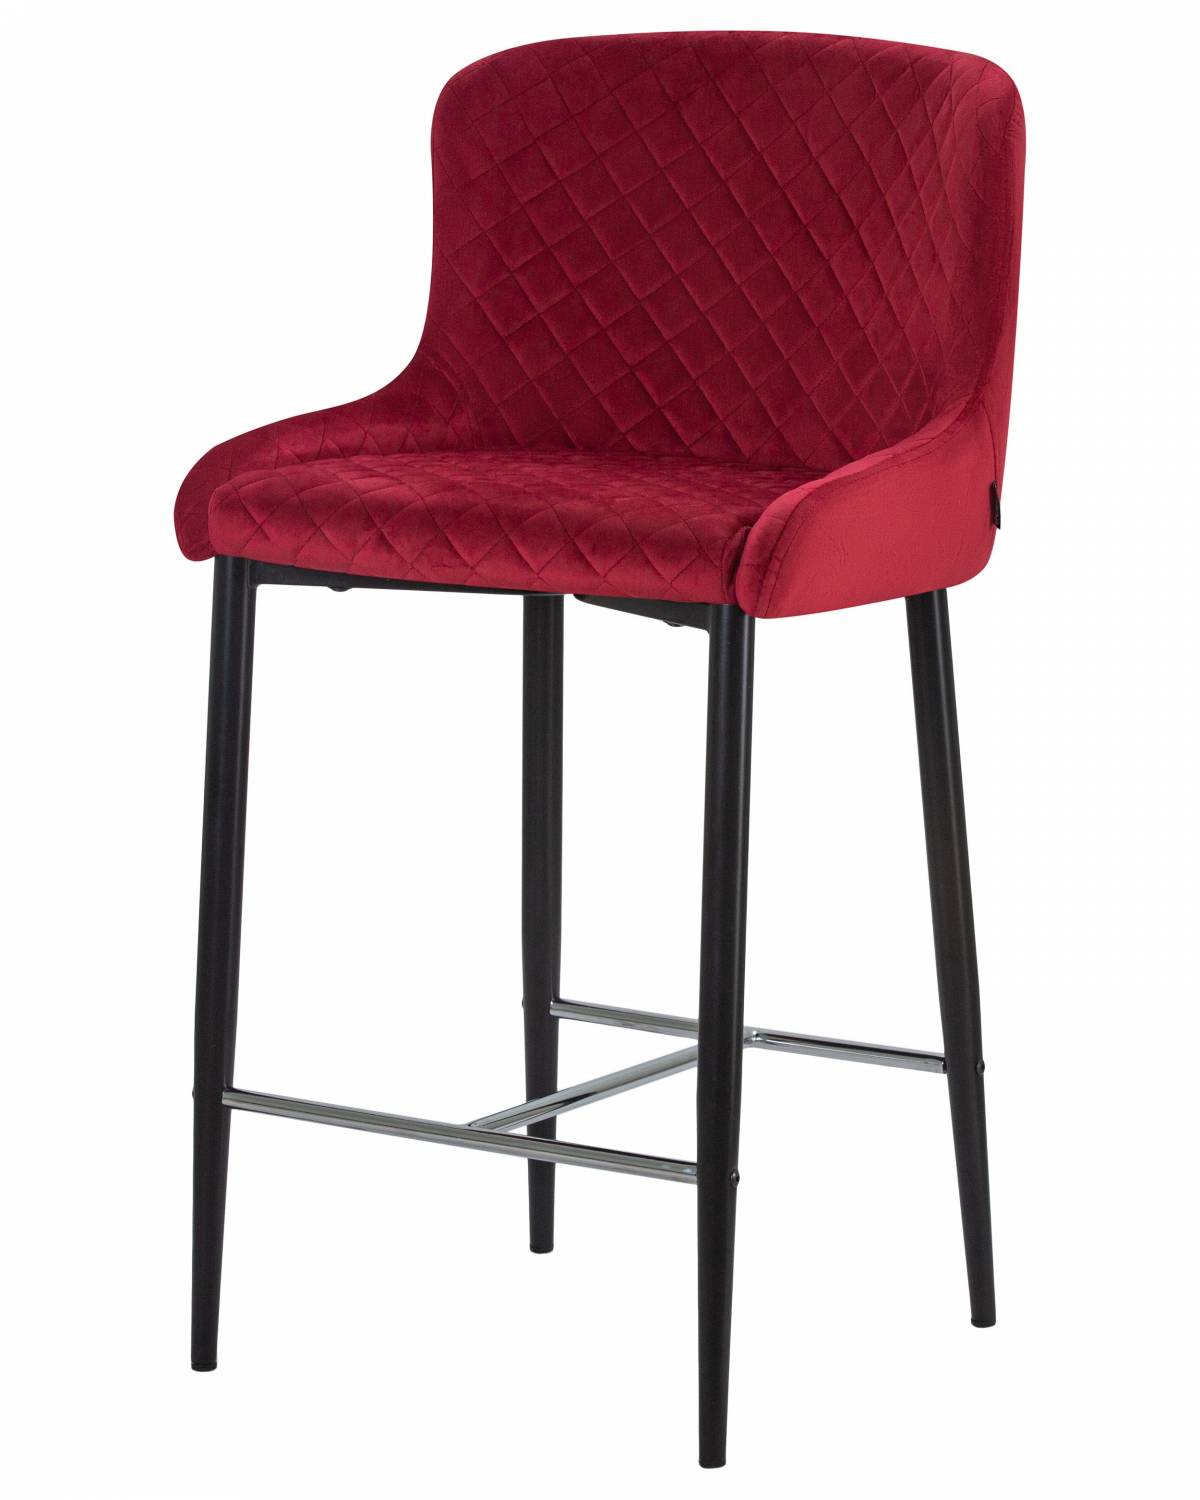 Купить красный полубарный стул christian MID  в Raroom